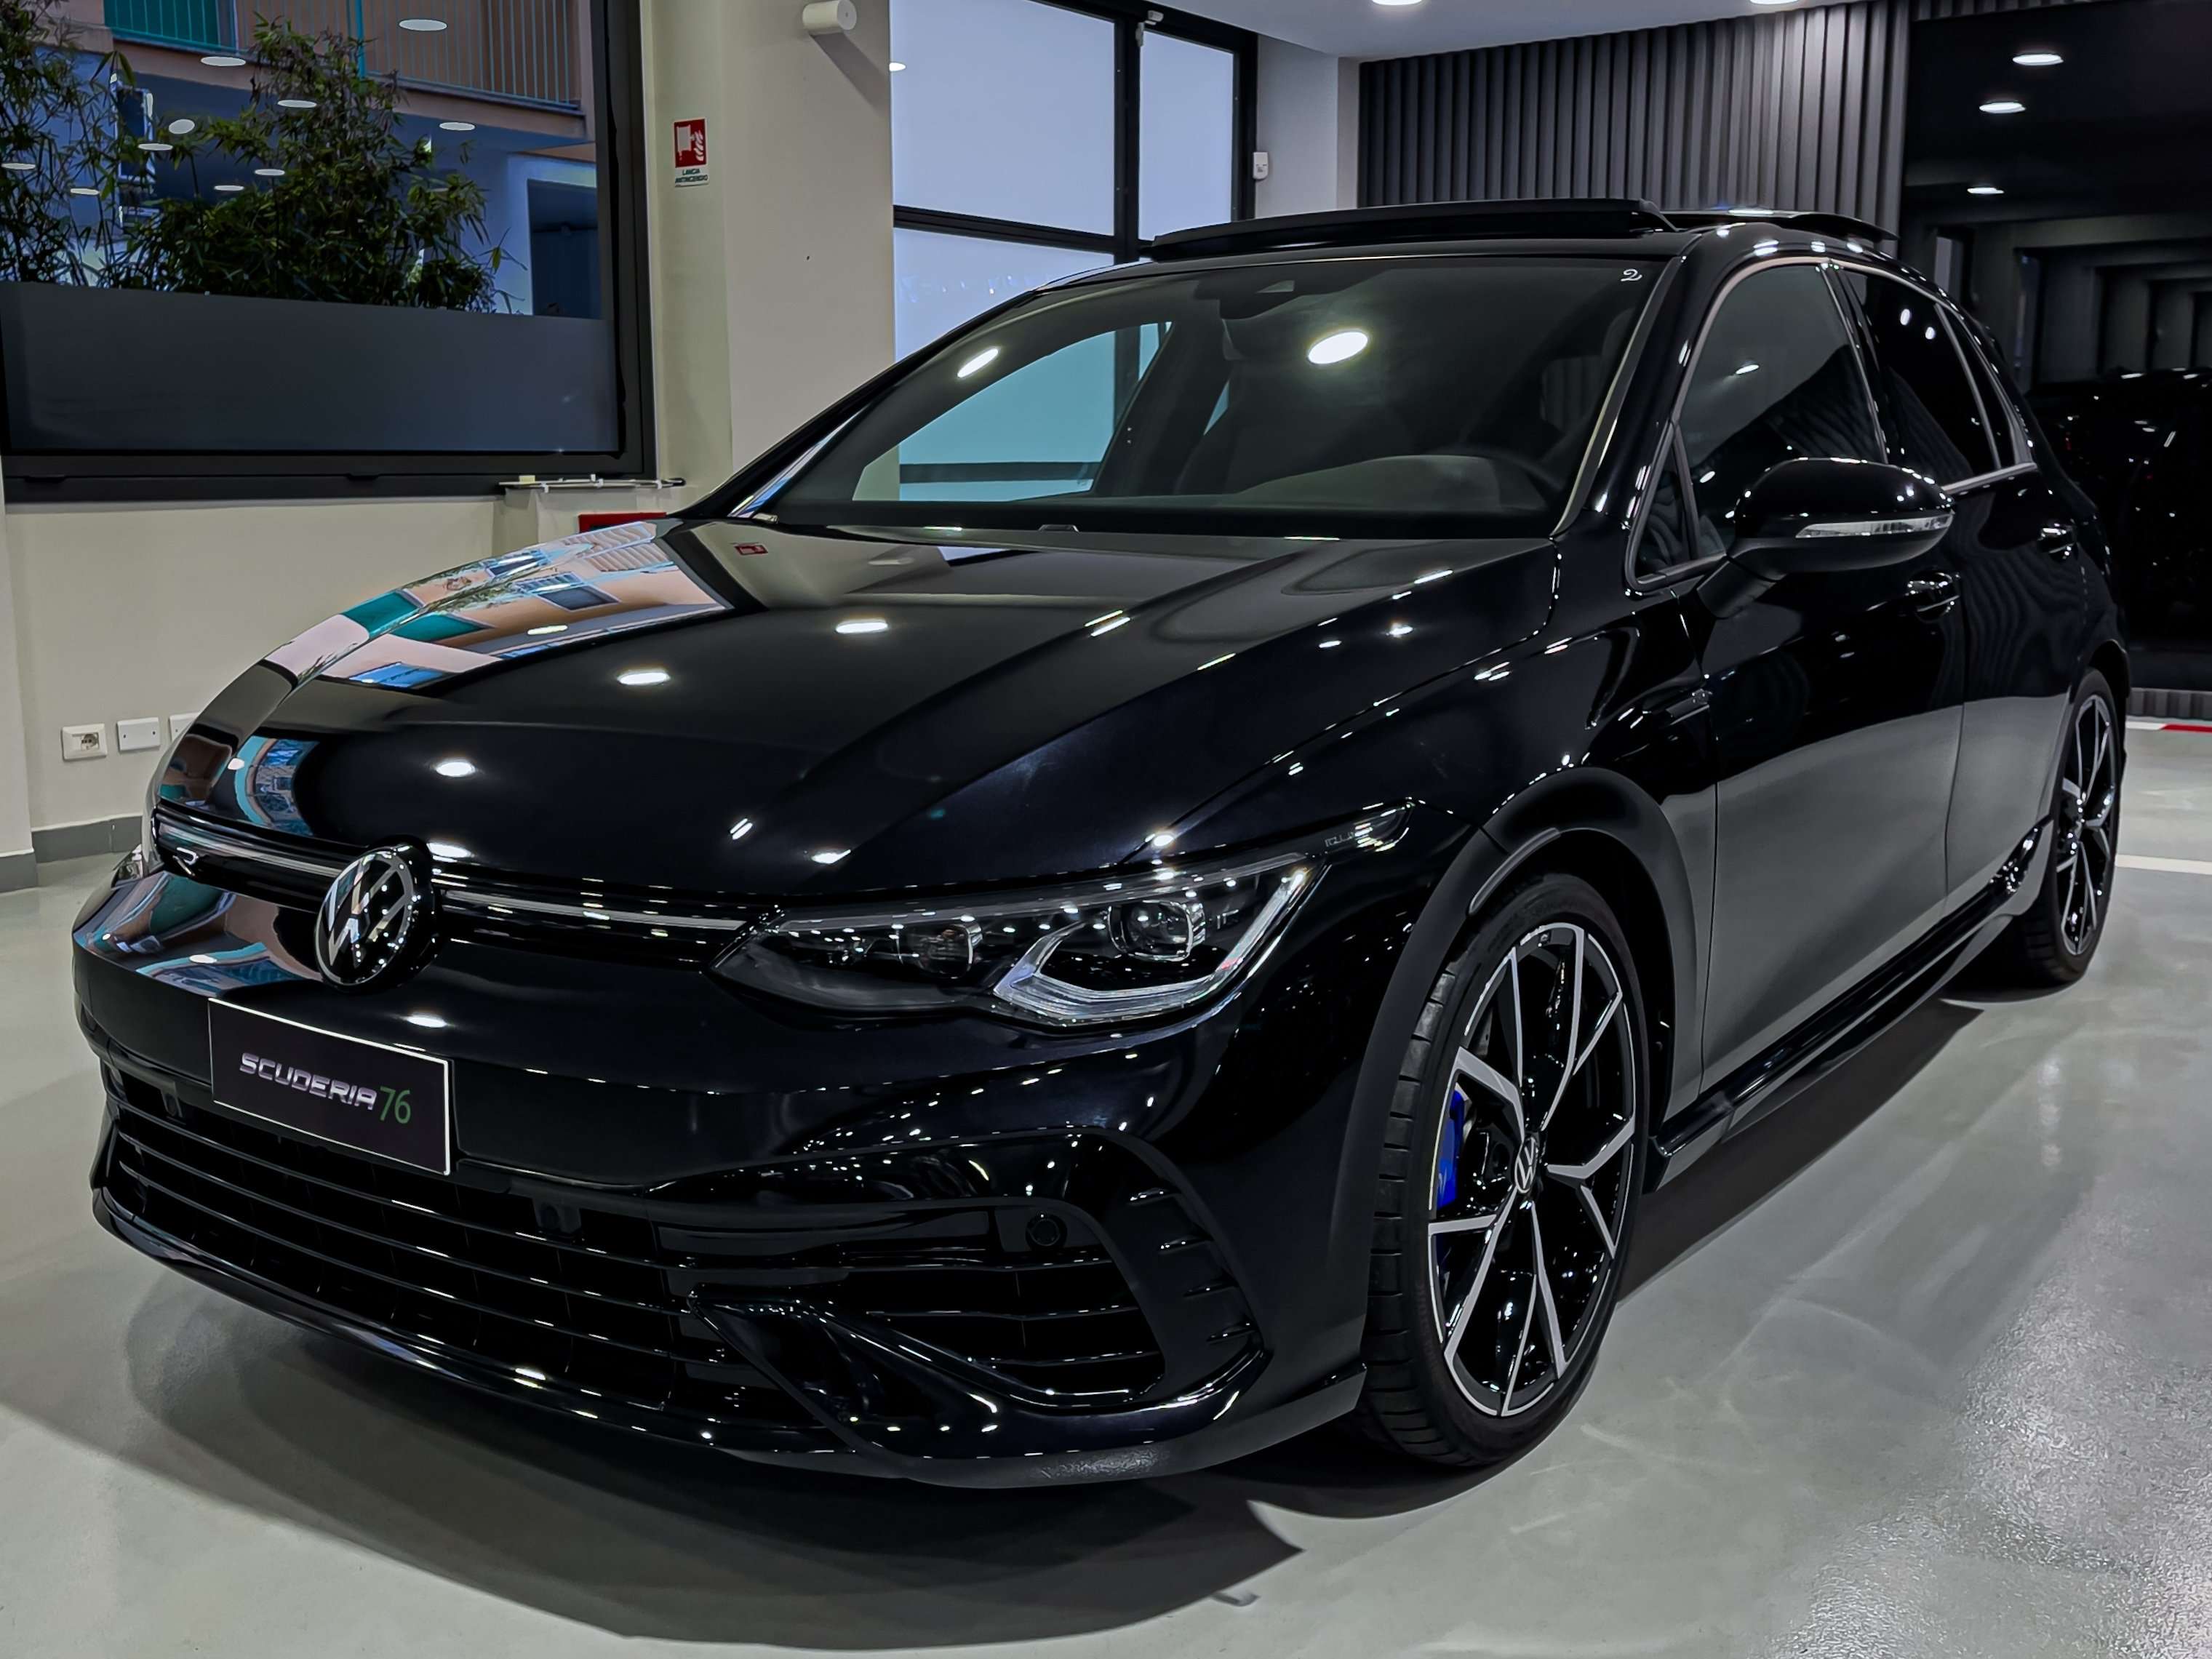 Volkswagen Golf Sedan in Black pre-registered in Milano - Mi for € 58,900.-